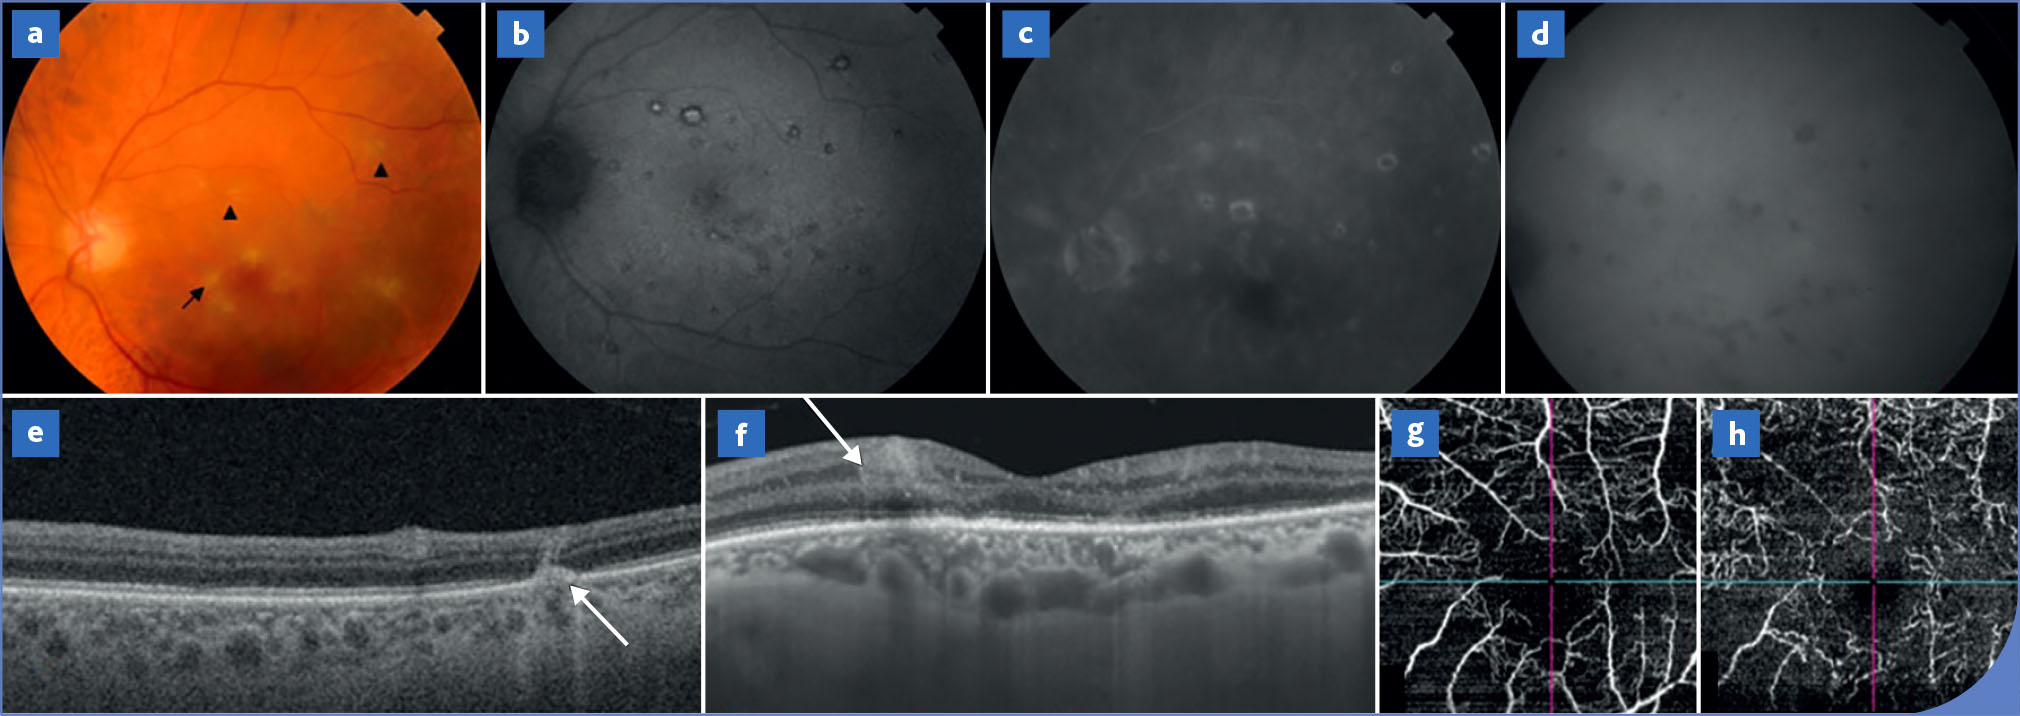 Atteinte oculaire et infection au virus West Nile - Figure 2